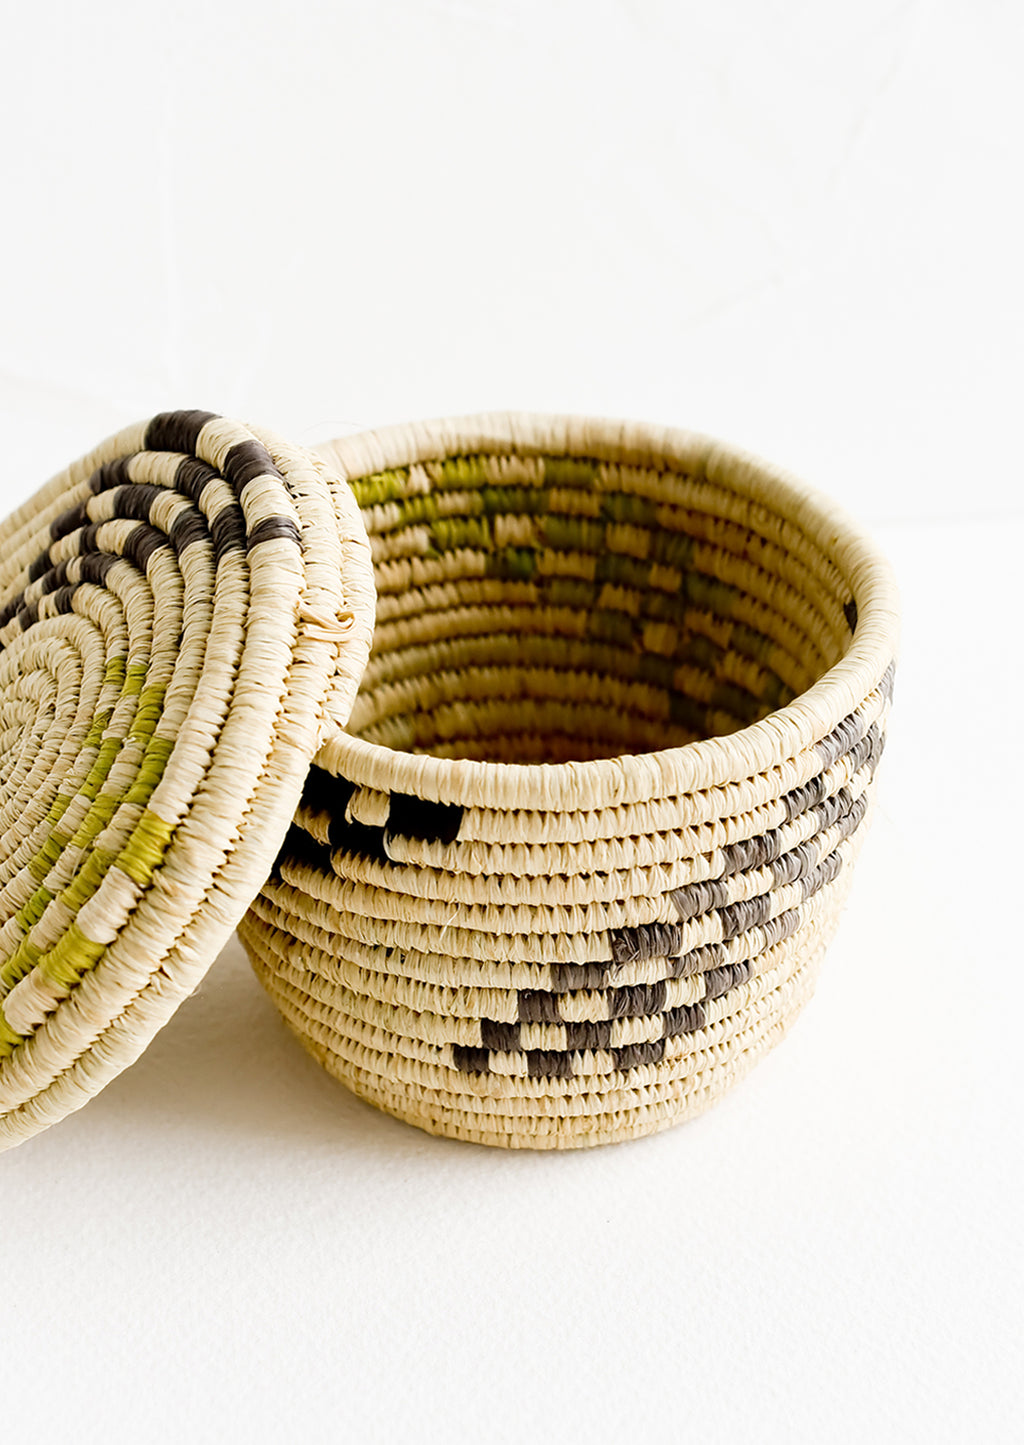 3: Small raffia baskets in woven checker print.